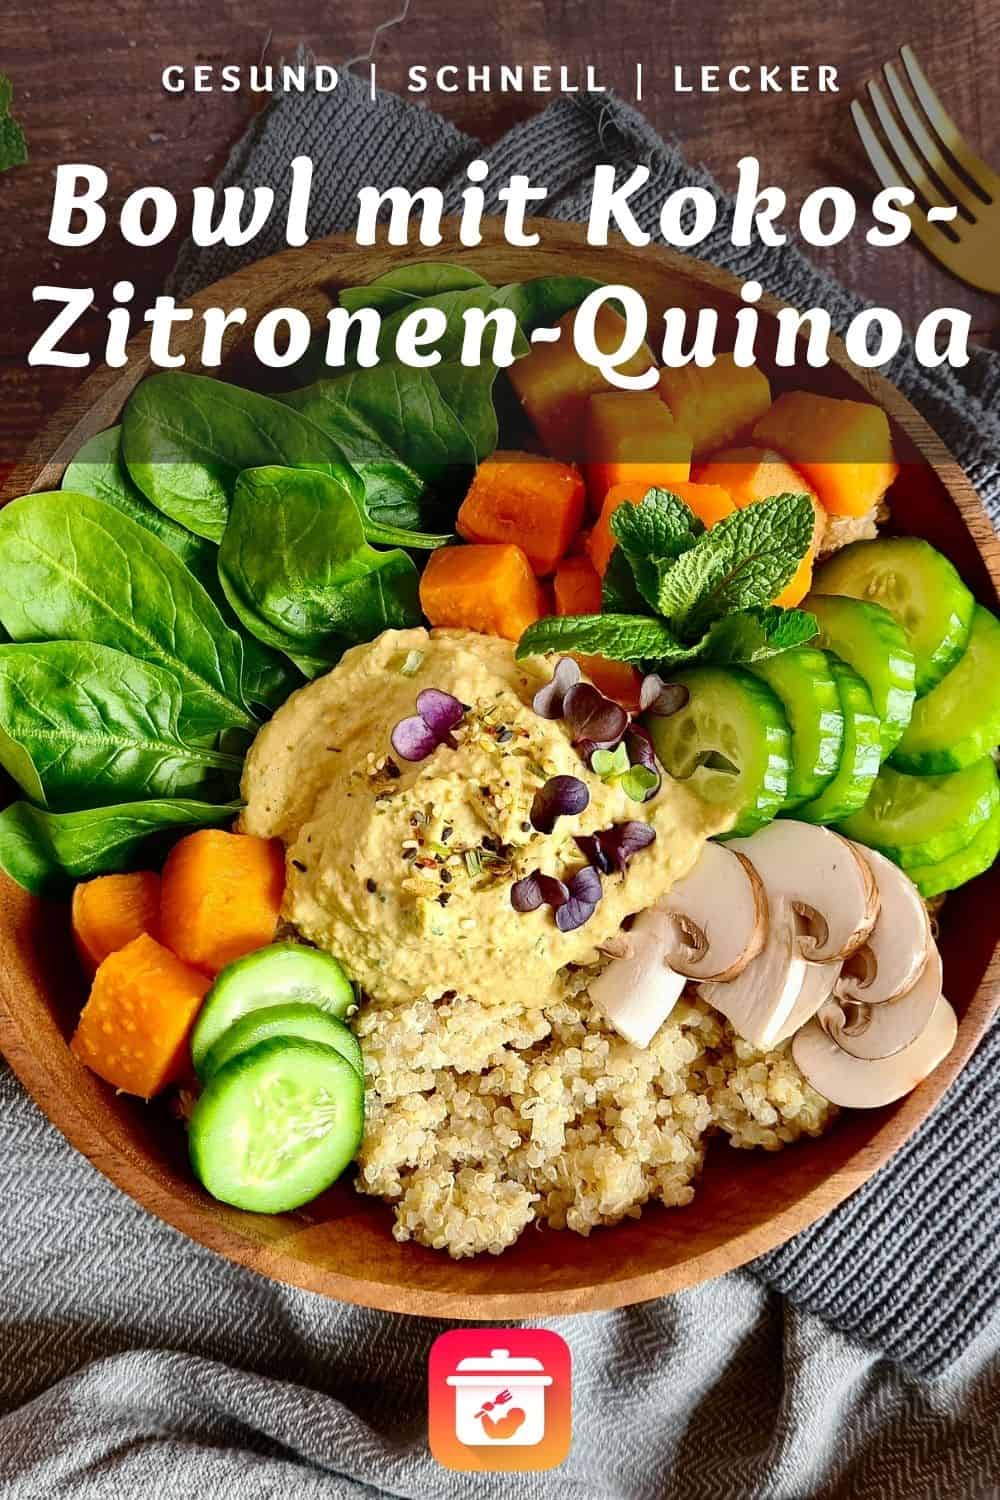 Bunte Bowl mit Kokos-Zitronen-Quinoa und Hummus